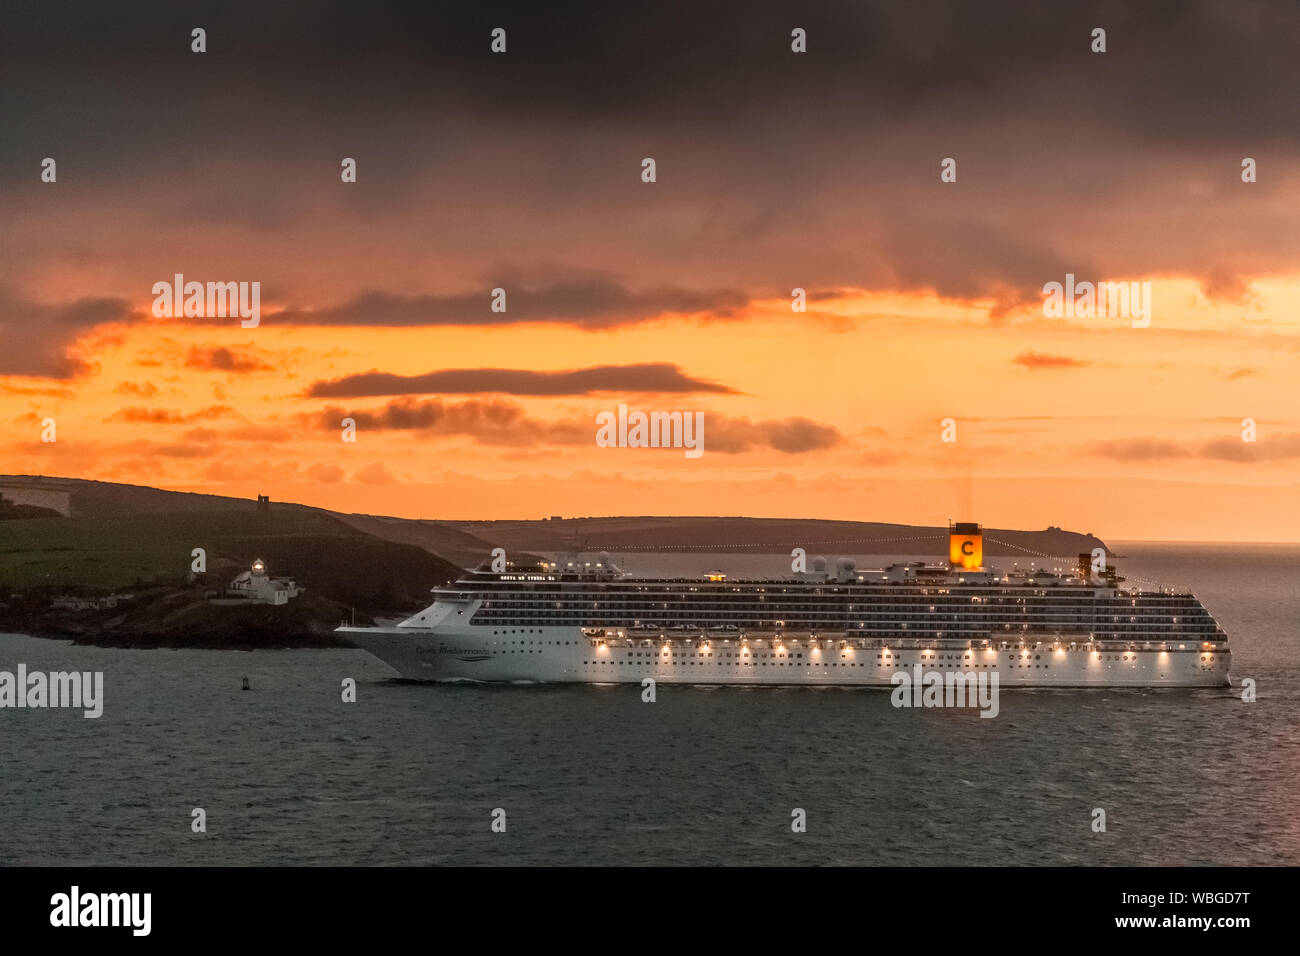 Costa cruise line immagini e fotografie stock ad alta risoluzione - Alamy